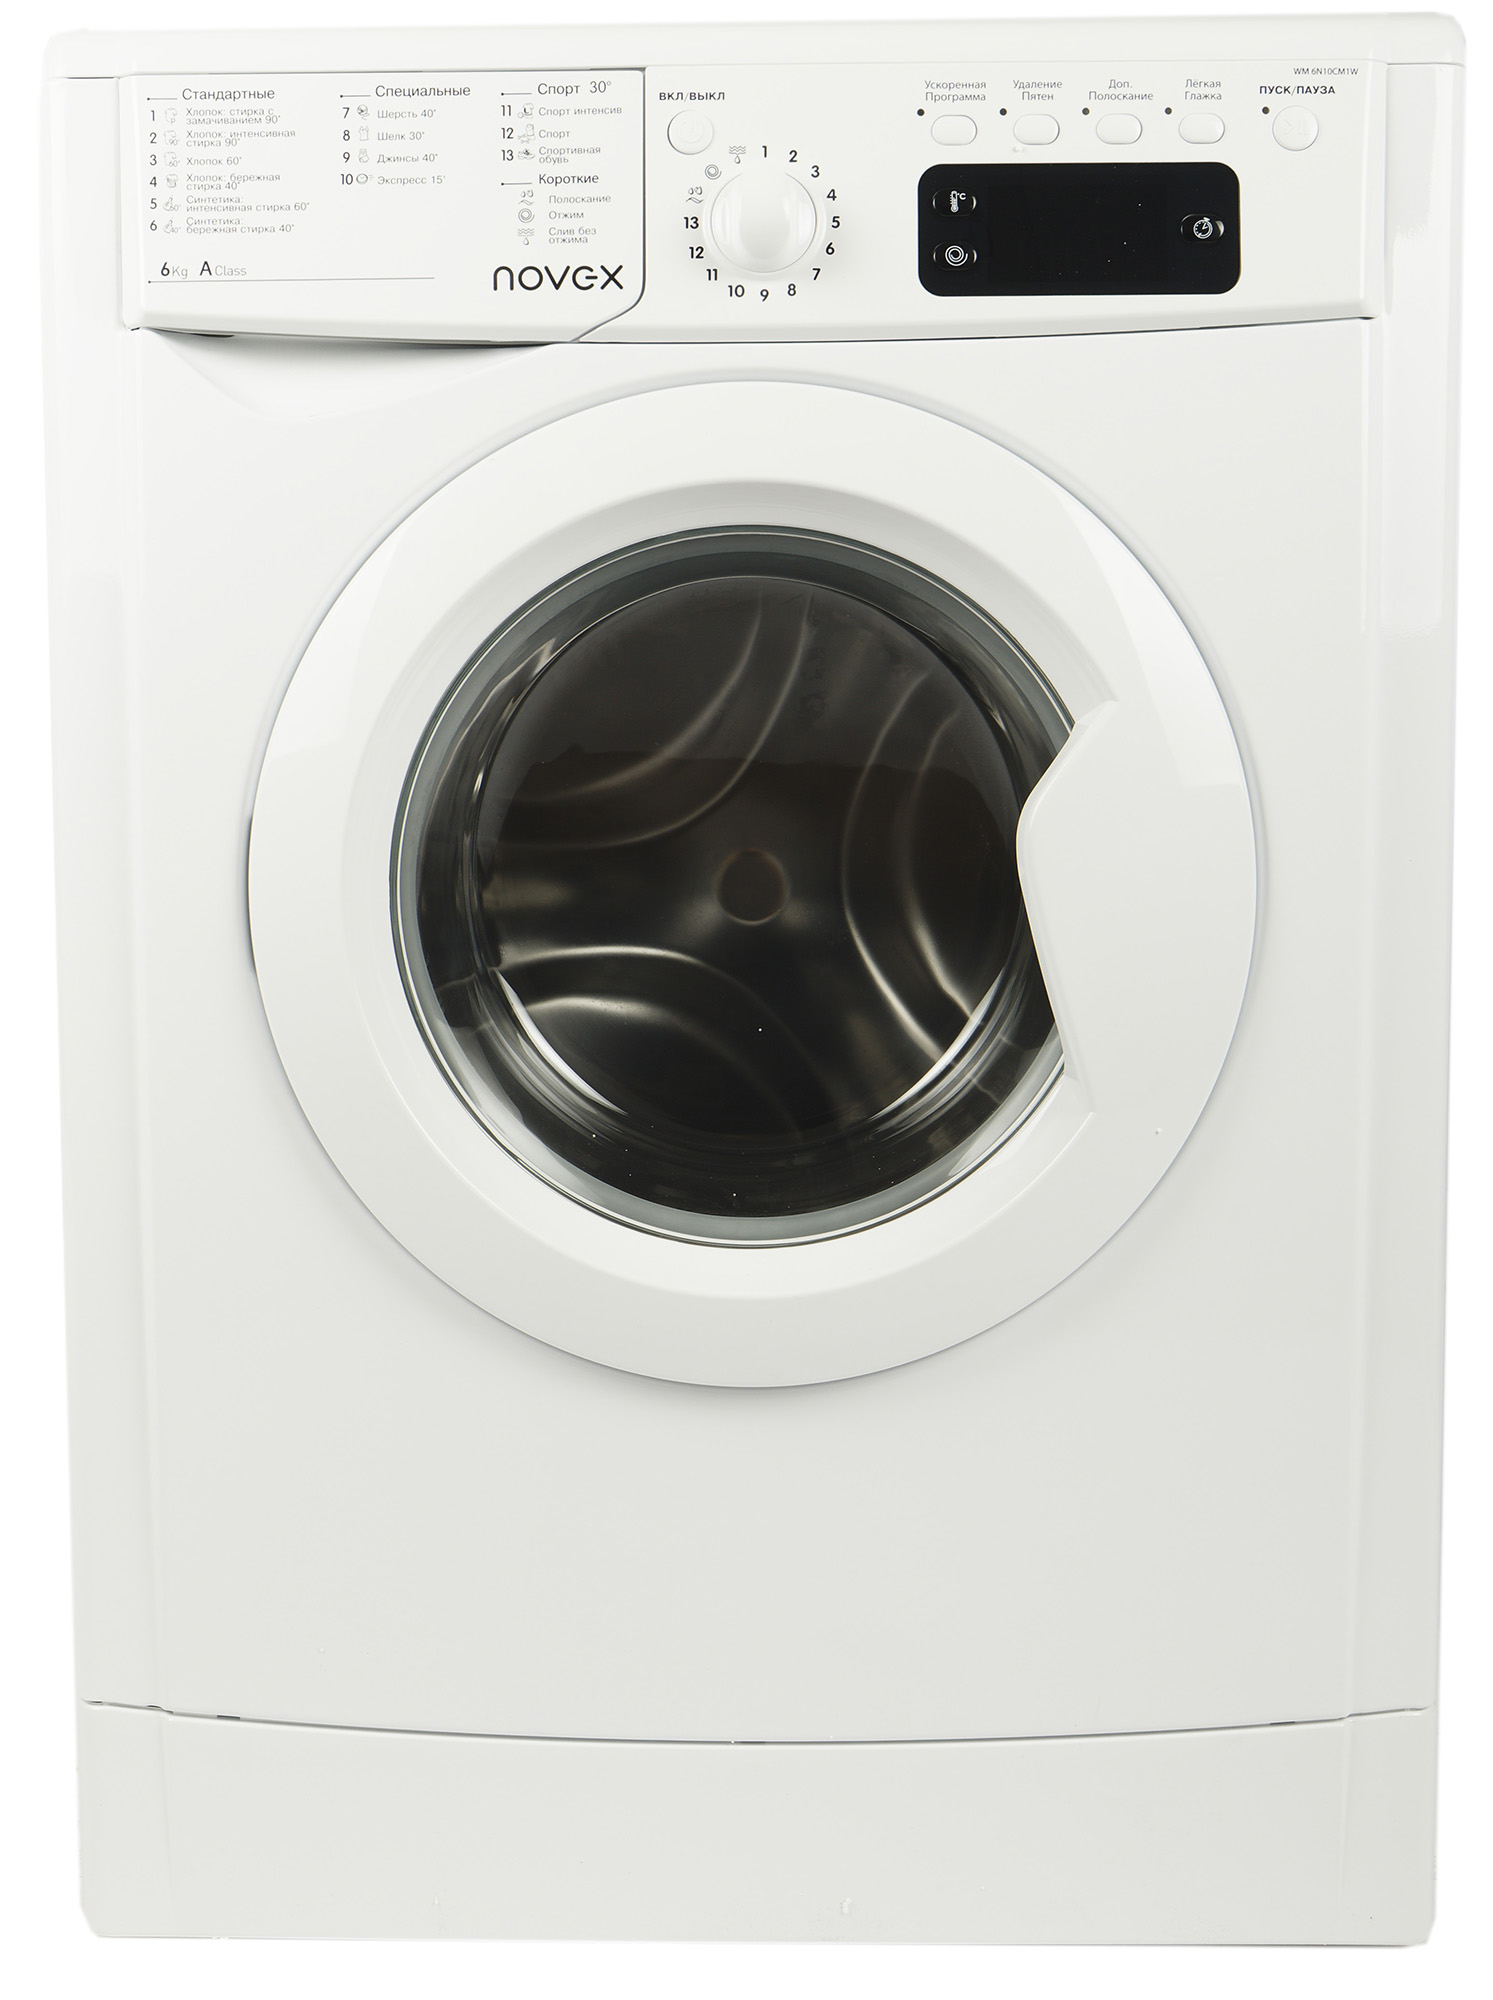 Как подключить стиральную машину к канализации?